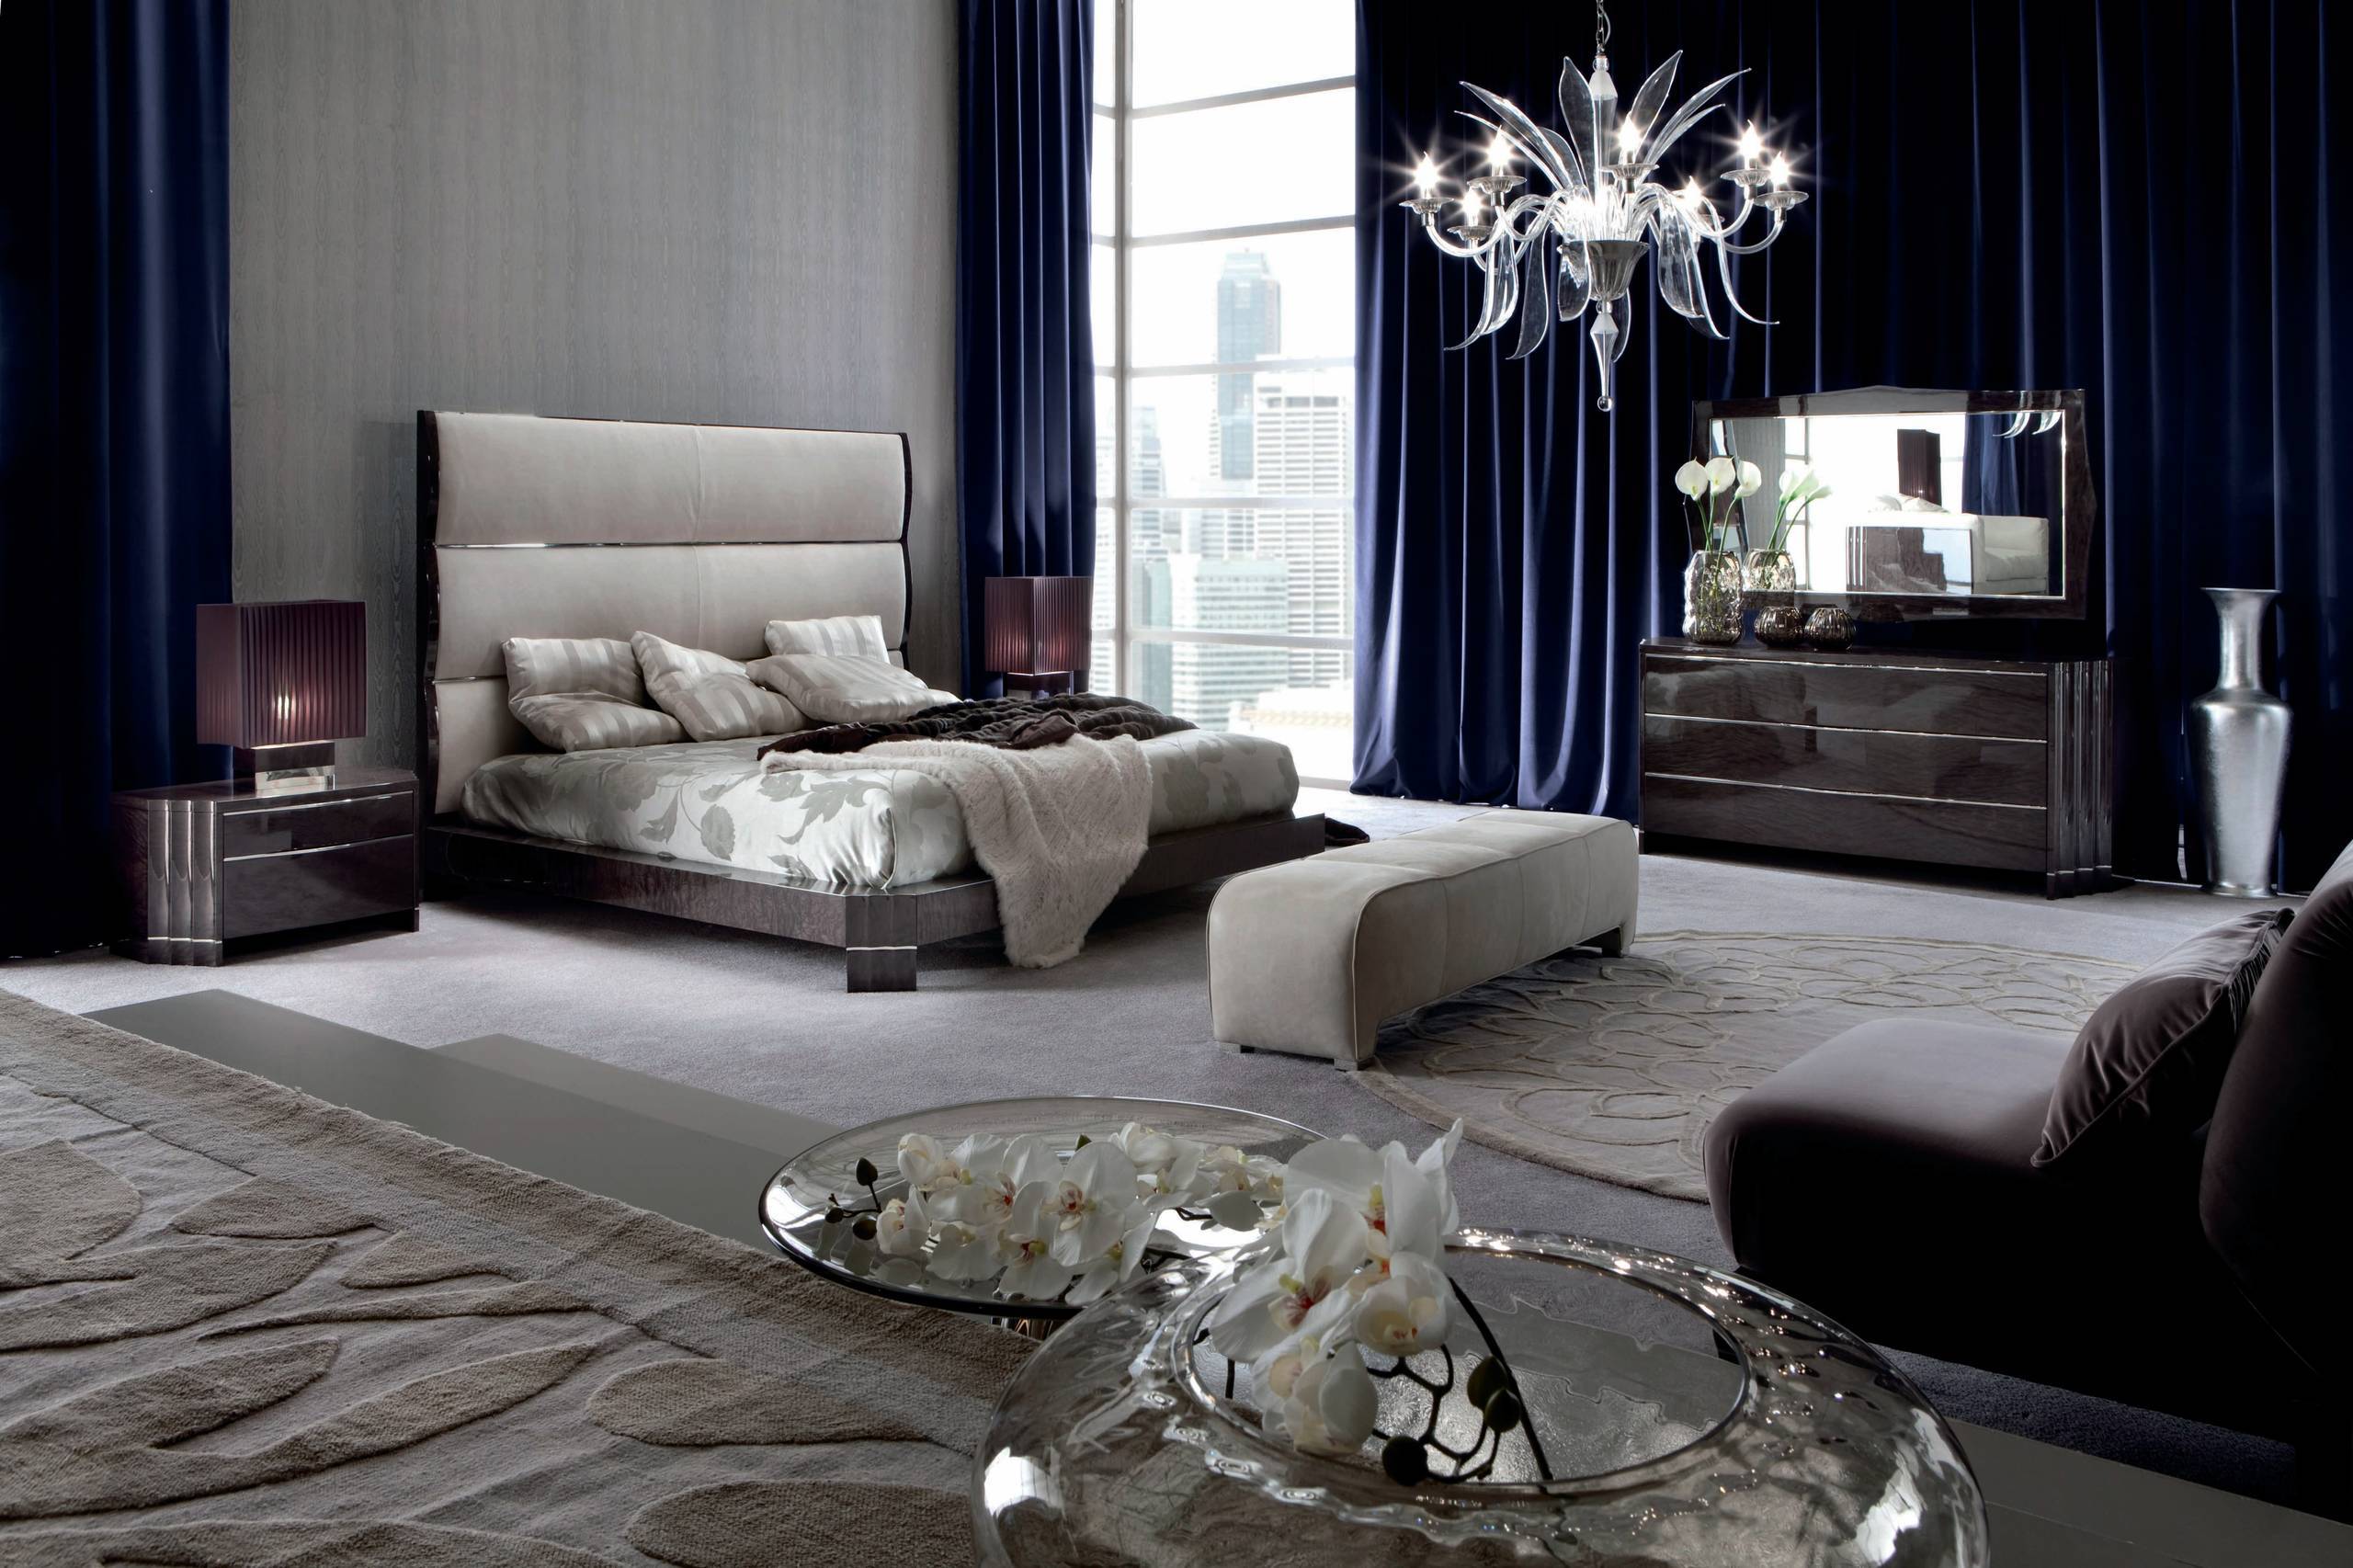 Elegant art deco bedroom (from Houzz)